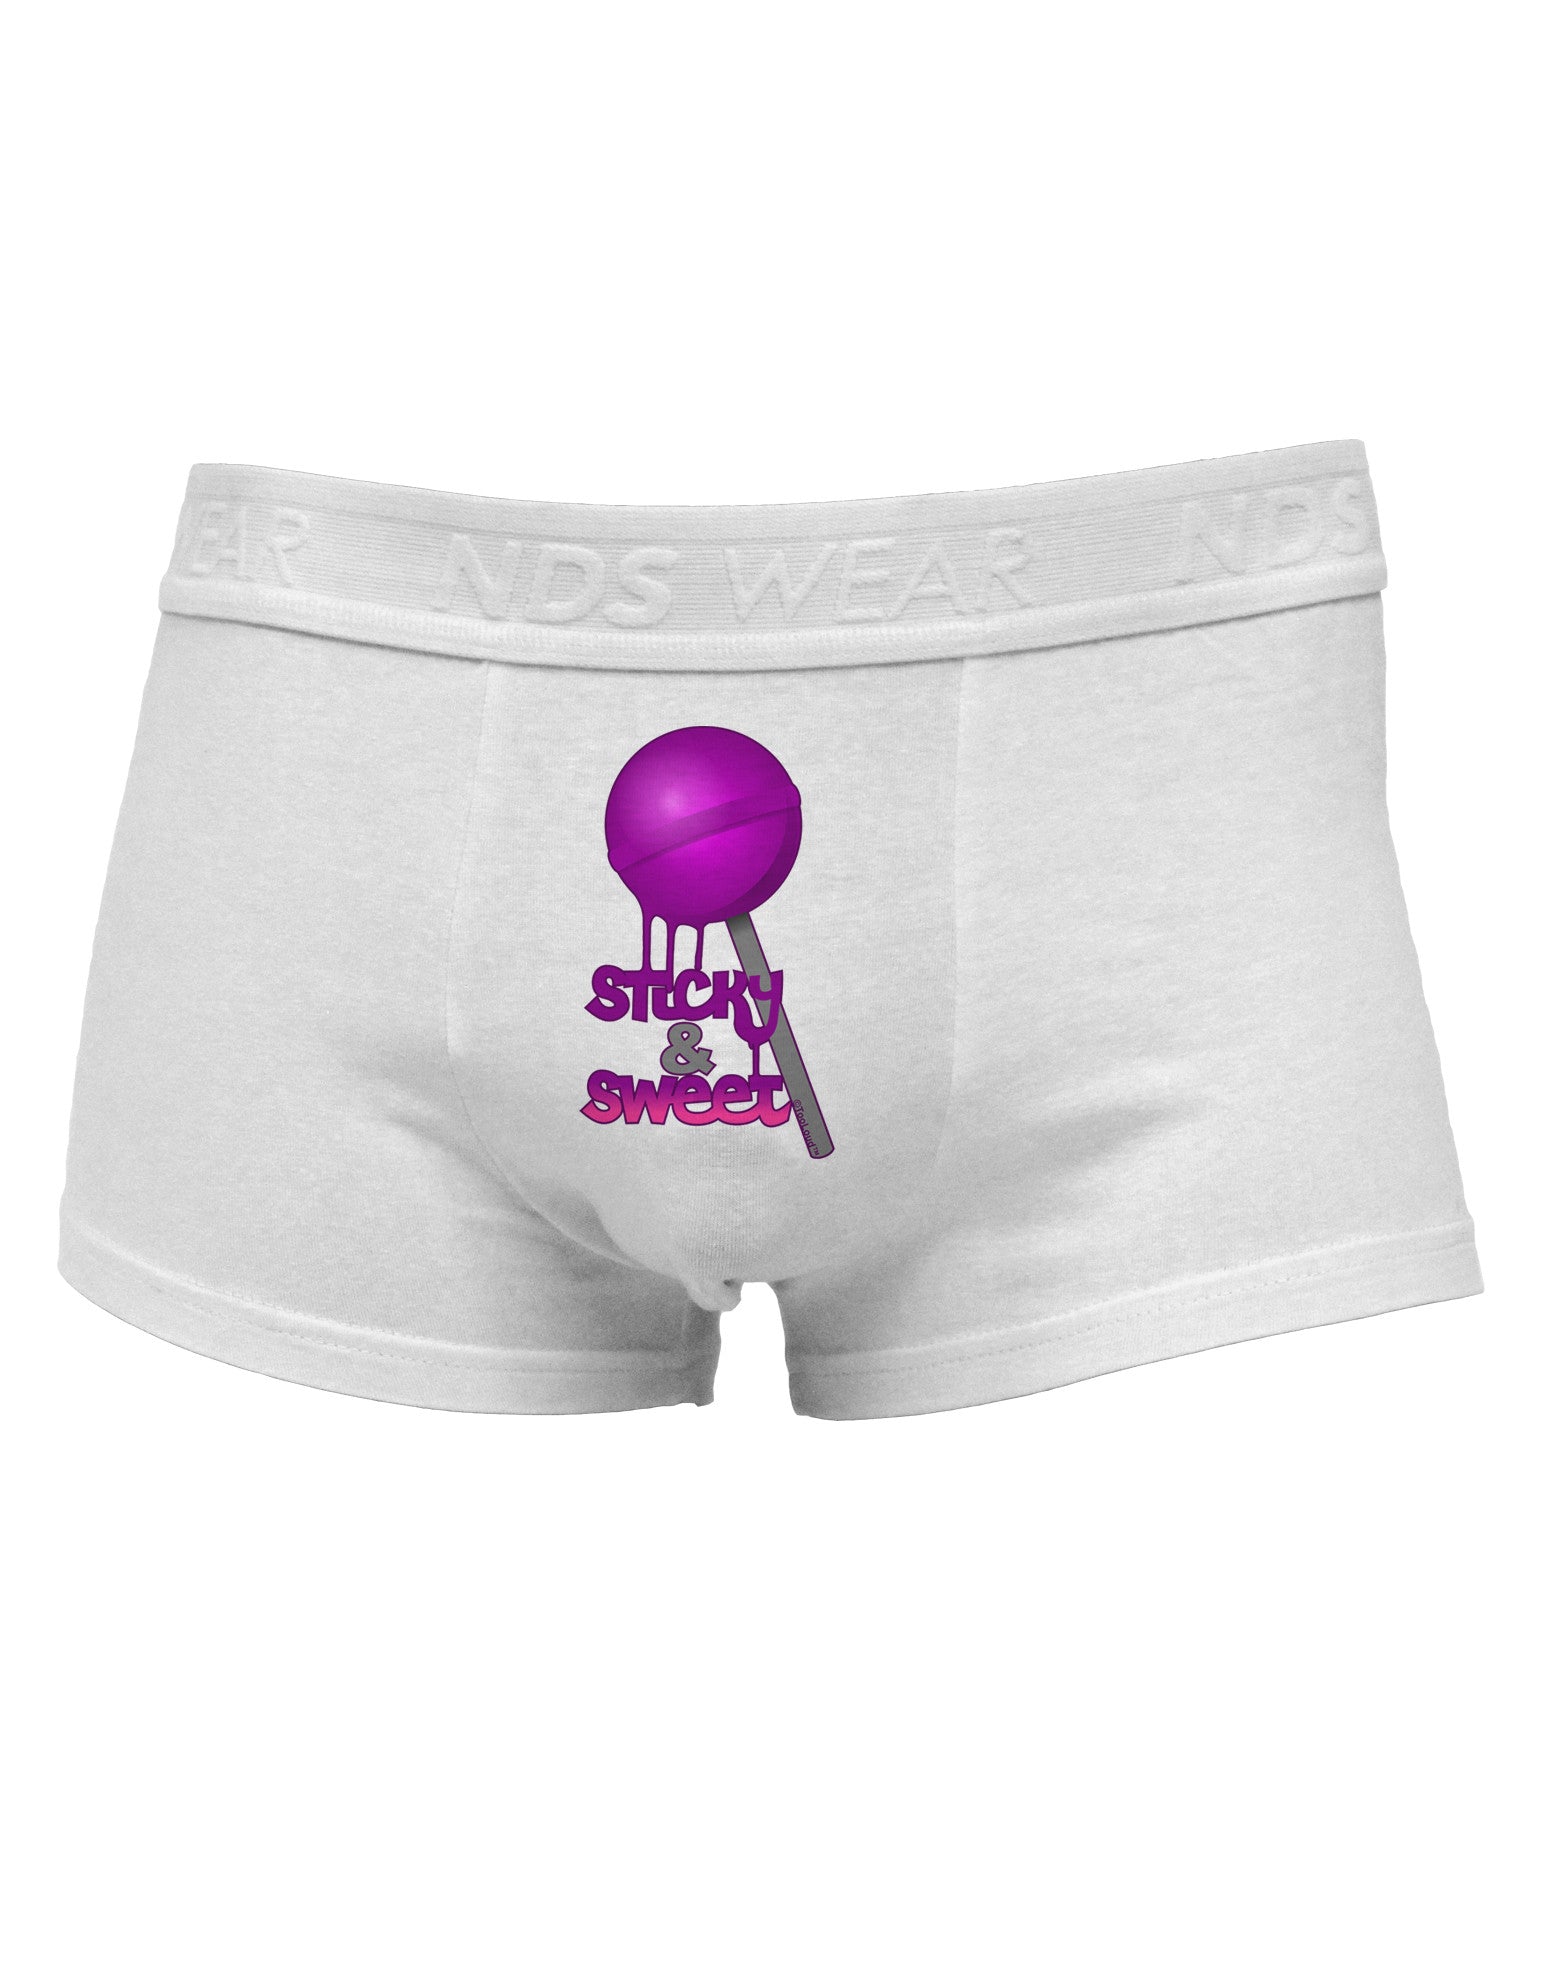 Sticky & Sweet Lollipop Mens Cotton Trunk Underwear - Davson Sales